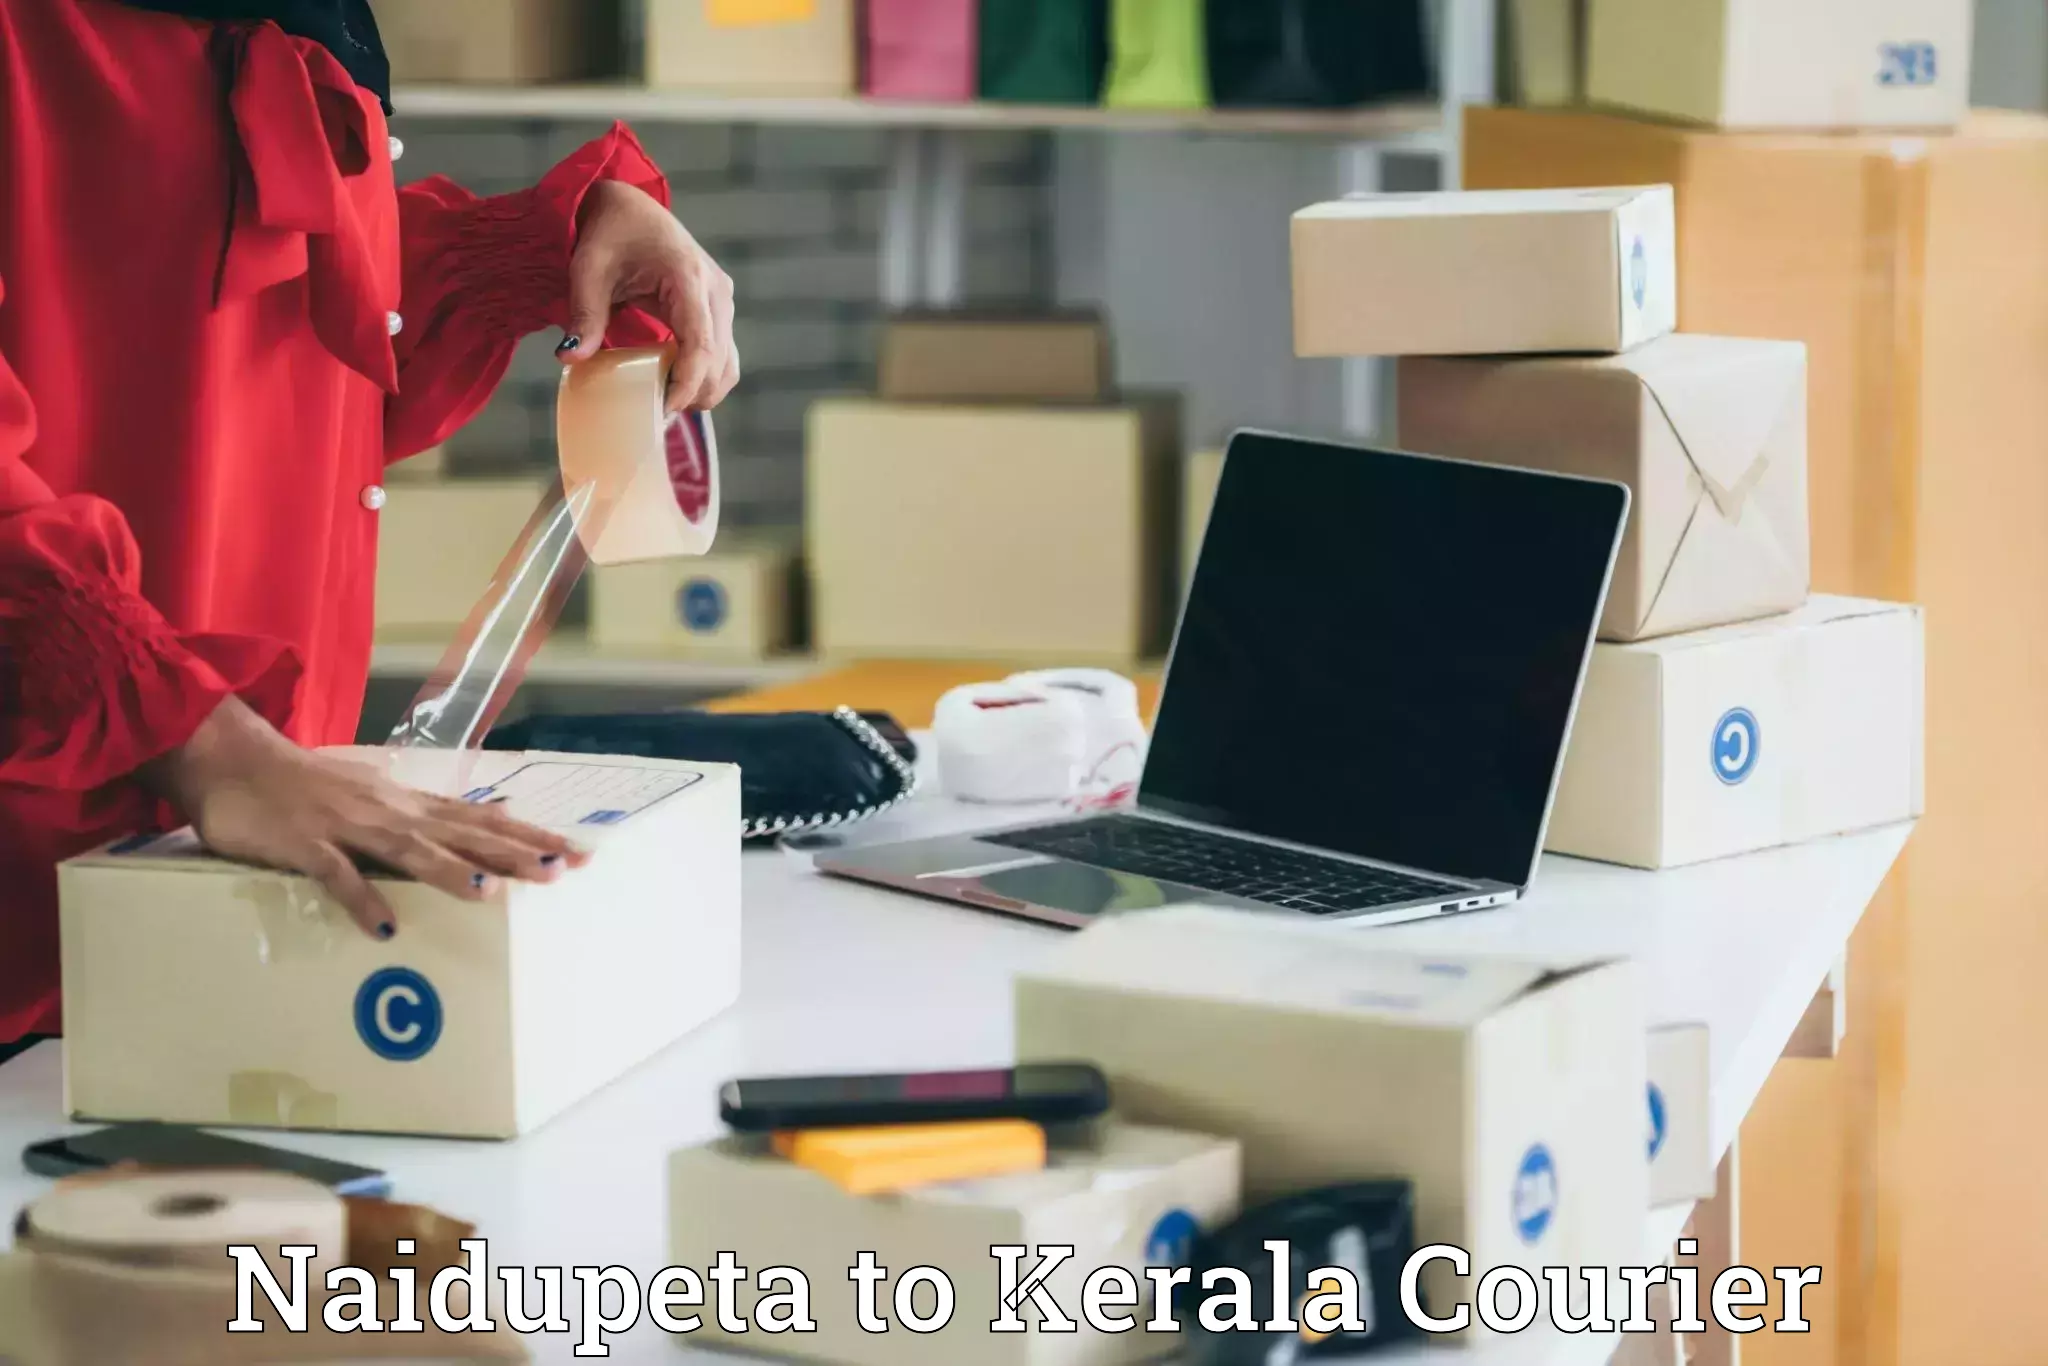 Professional courier handling Naidupeta to Thiruvananthapuram